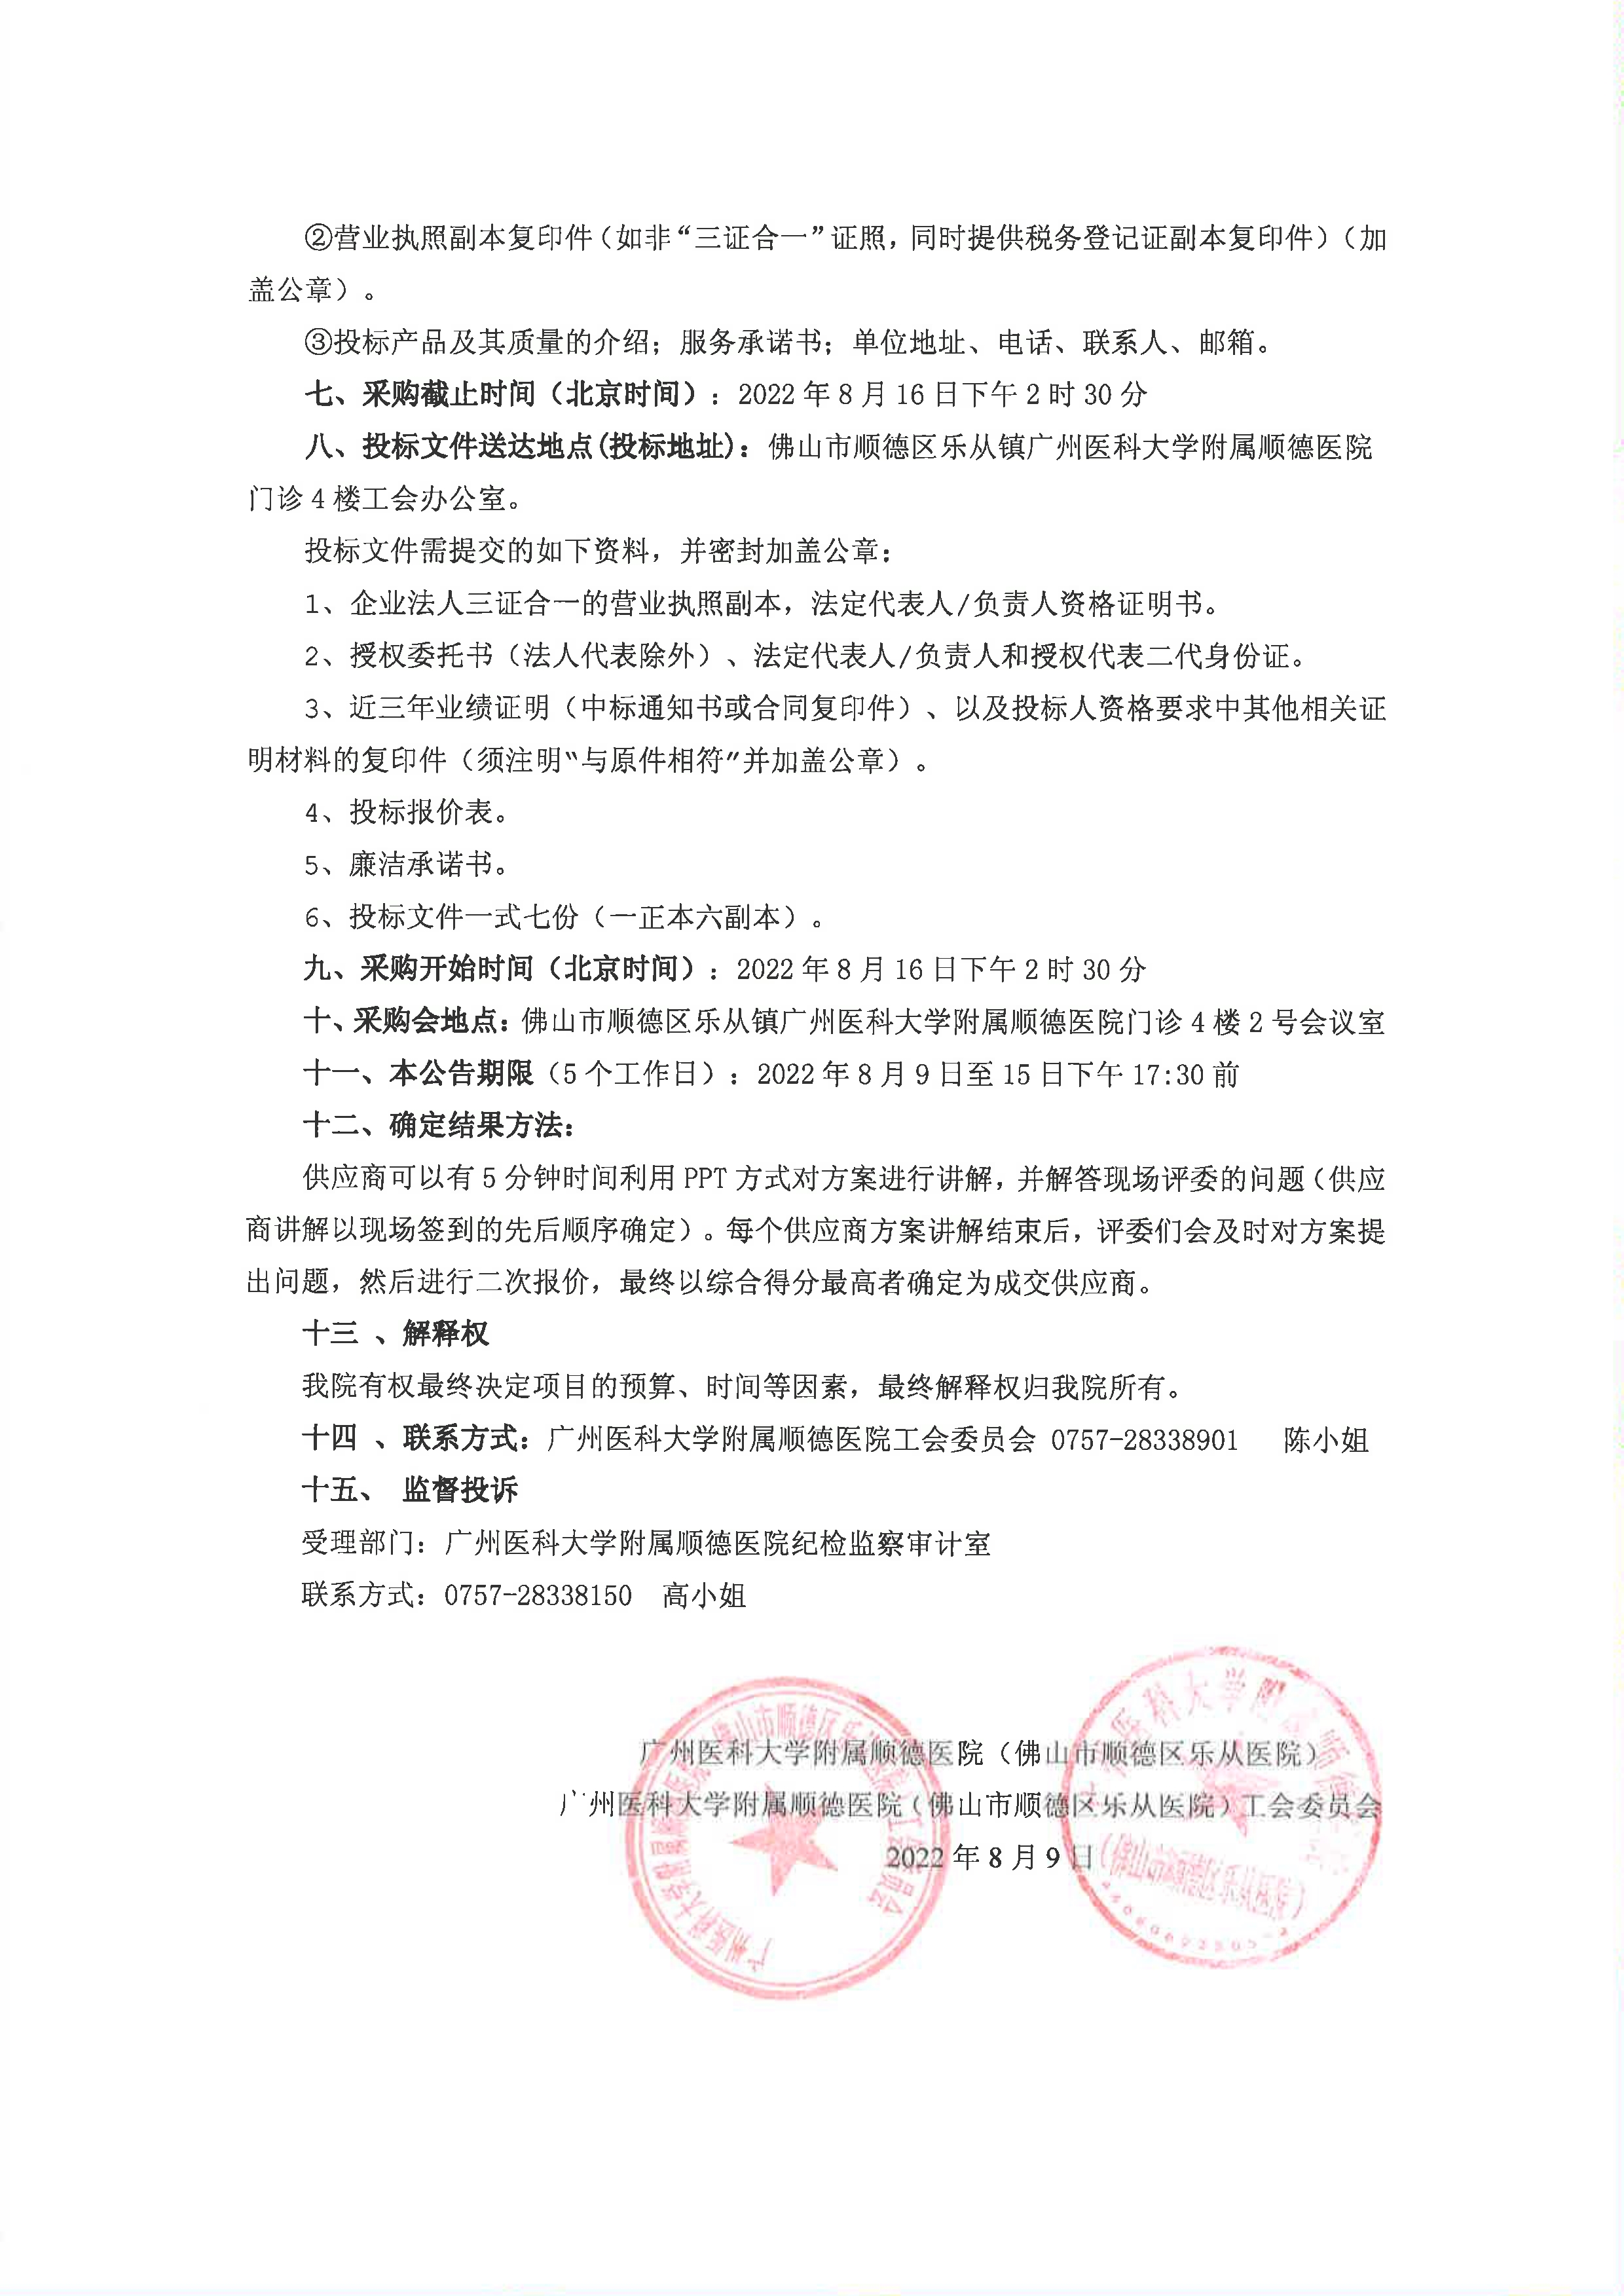 2022年工会会员中秋节礼品院内招标项目公告_2.jpg